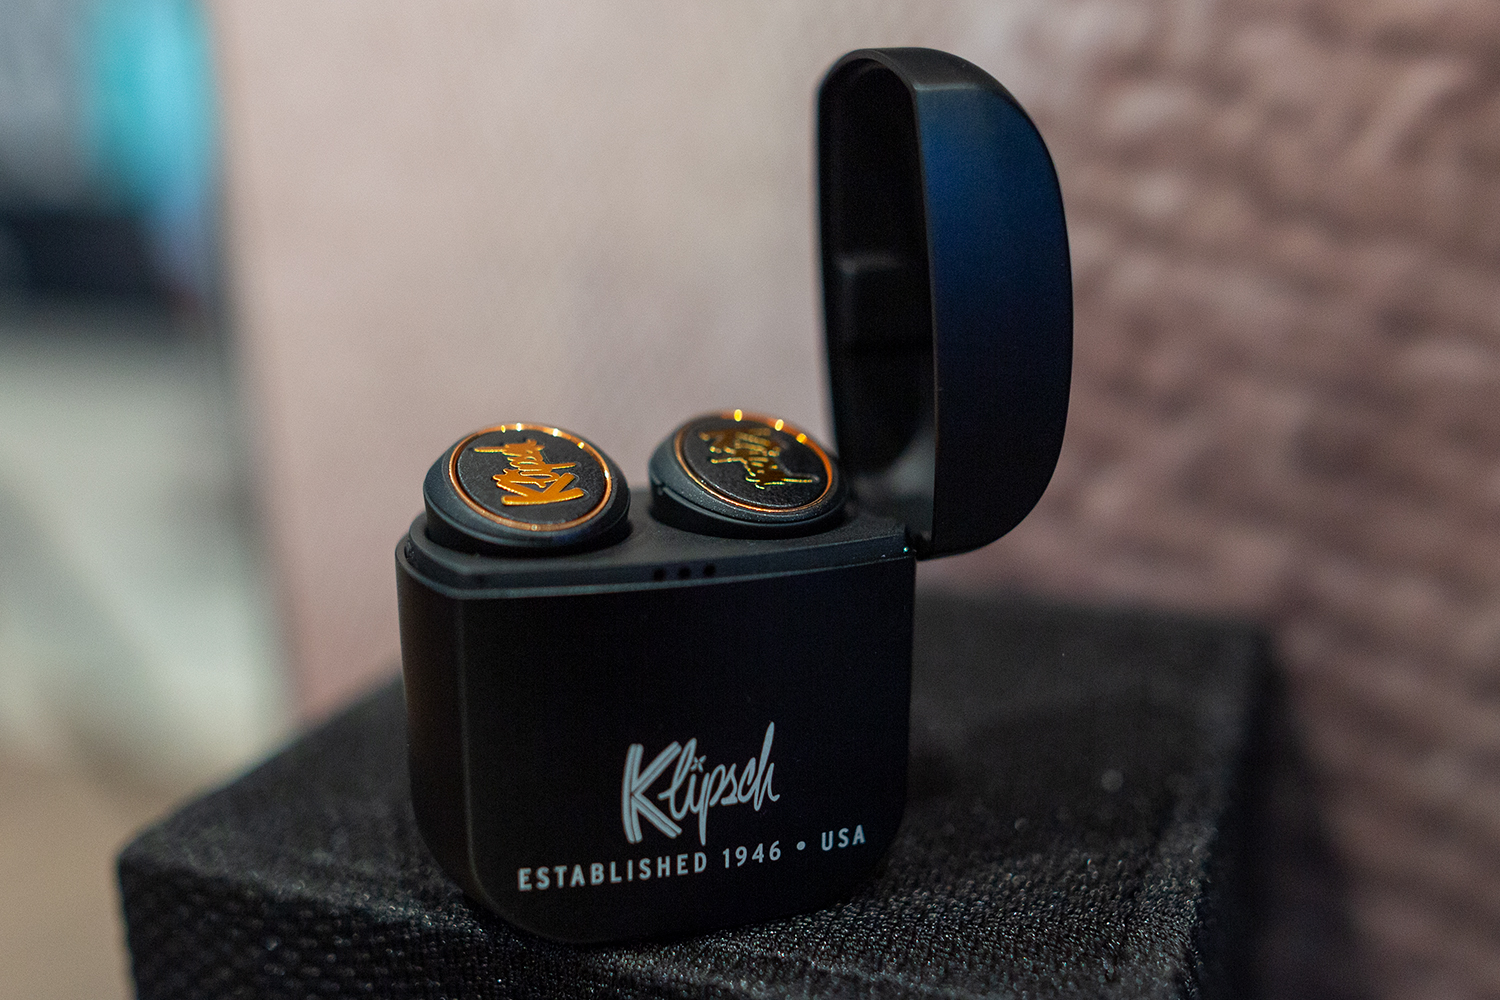 Klipsch T5 True Wireless earbuds